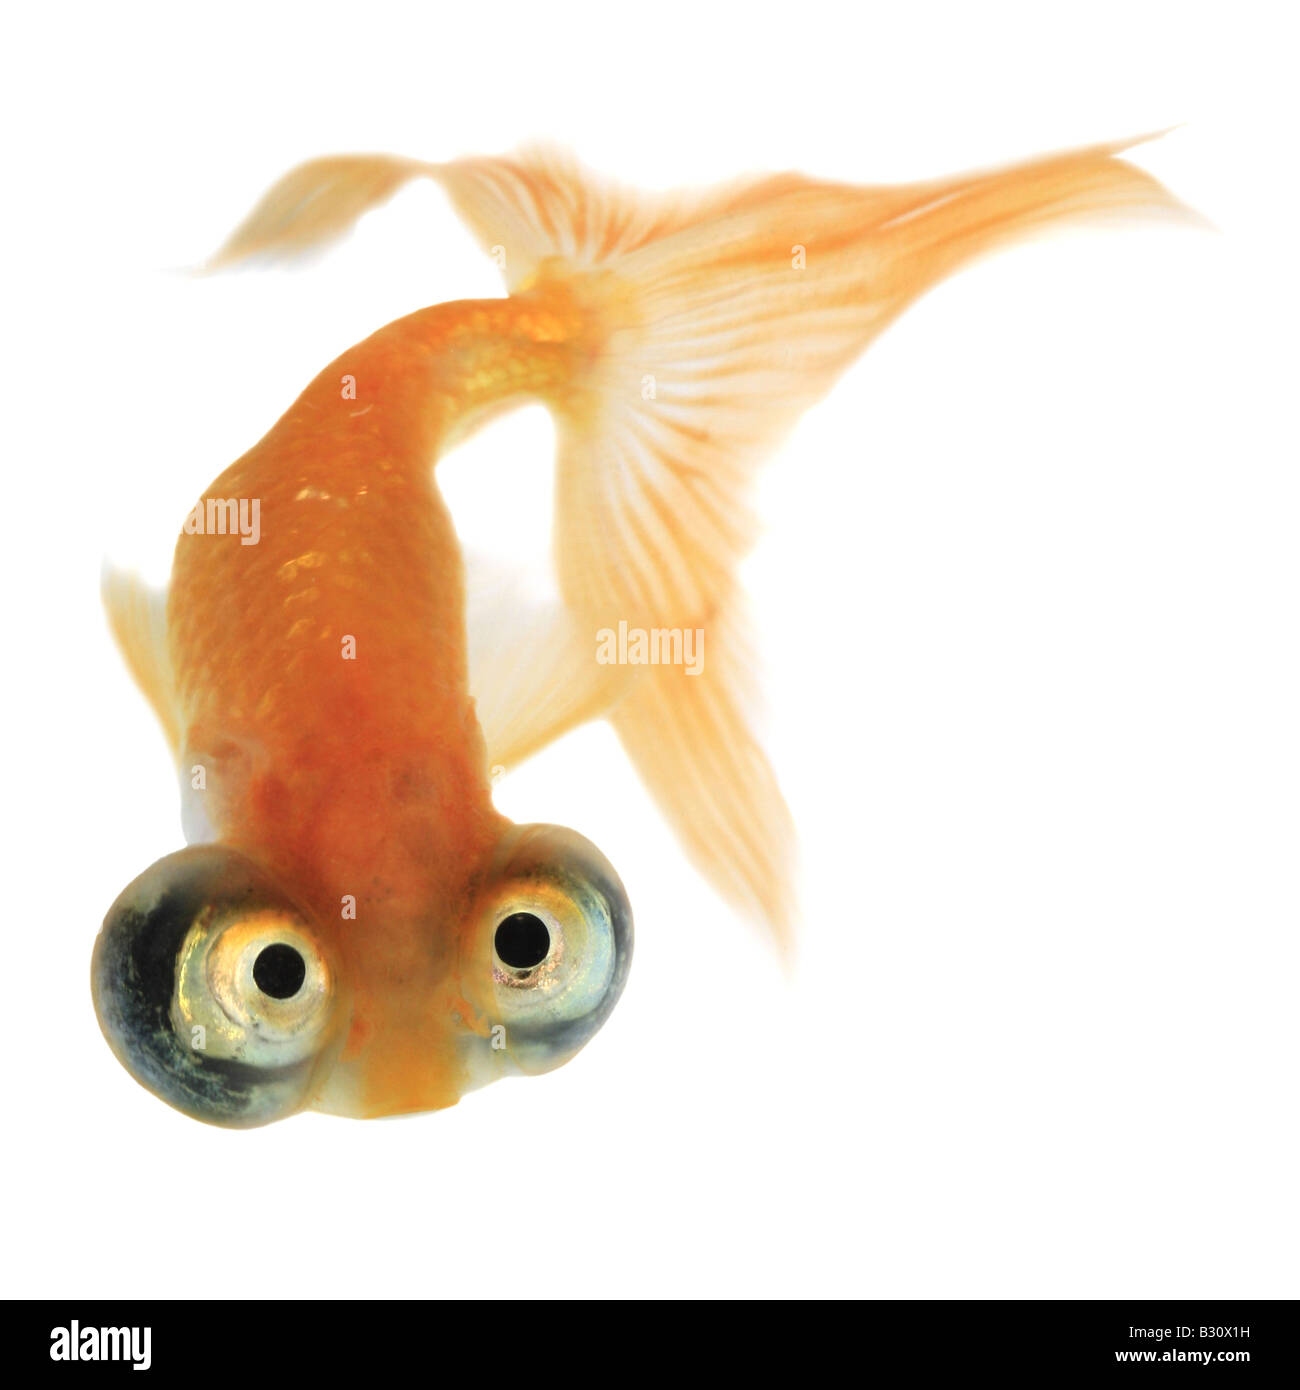 Celestial, Carassius auratus, goldfish, common carp, celestial eye goldfish, Celestial Stock Photo